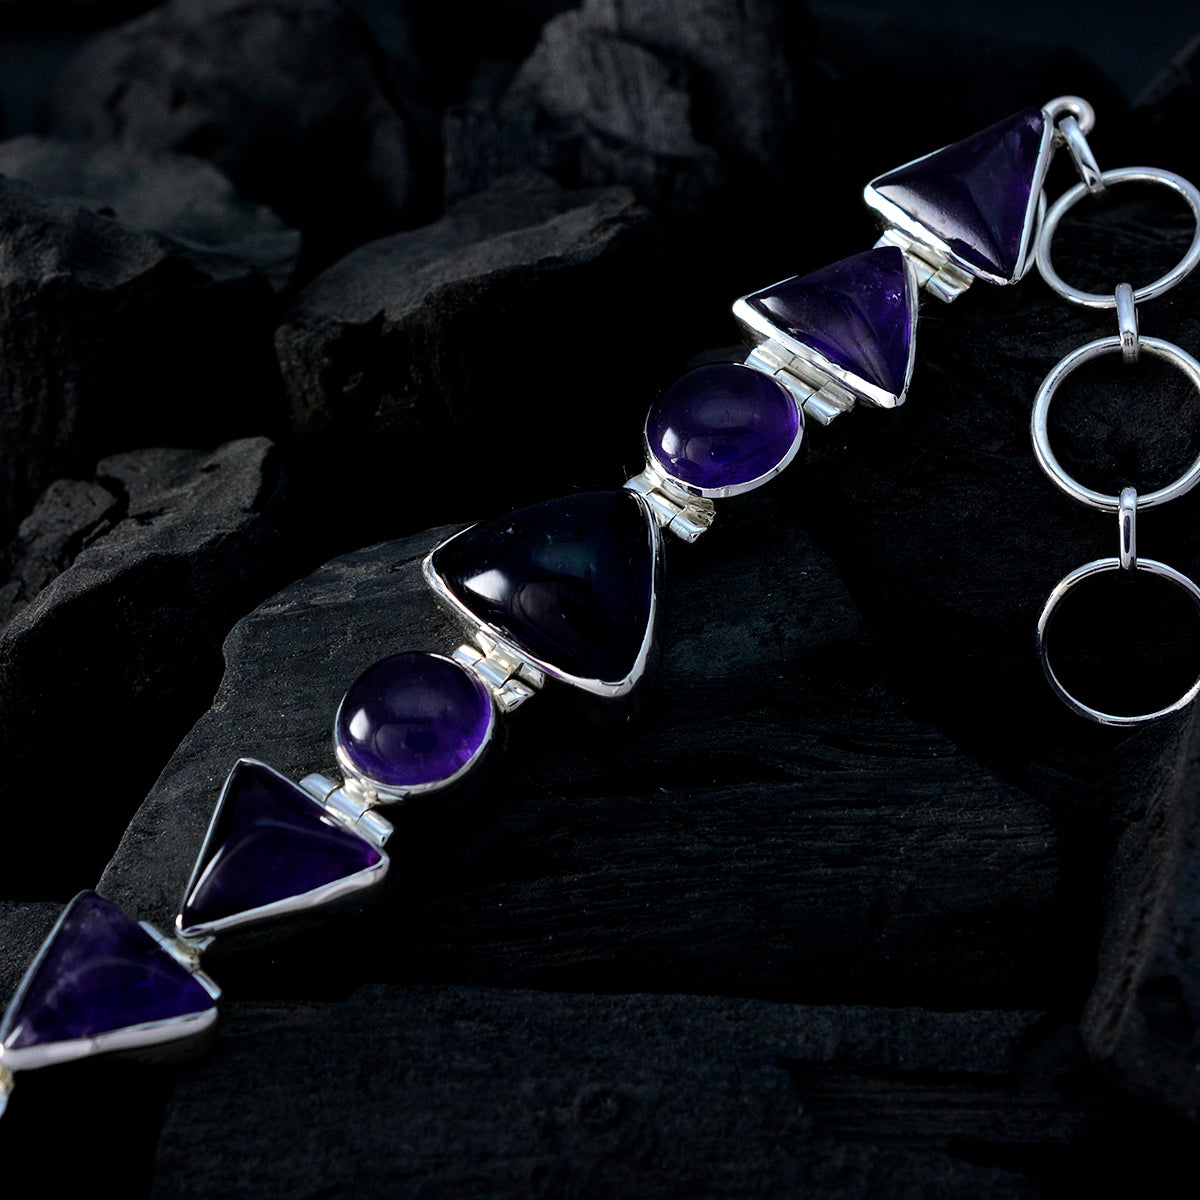 Riyo Real Gemstones Fancy Cabochon Purple Amethyst Silver Bracelet good Friday gift